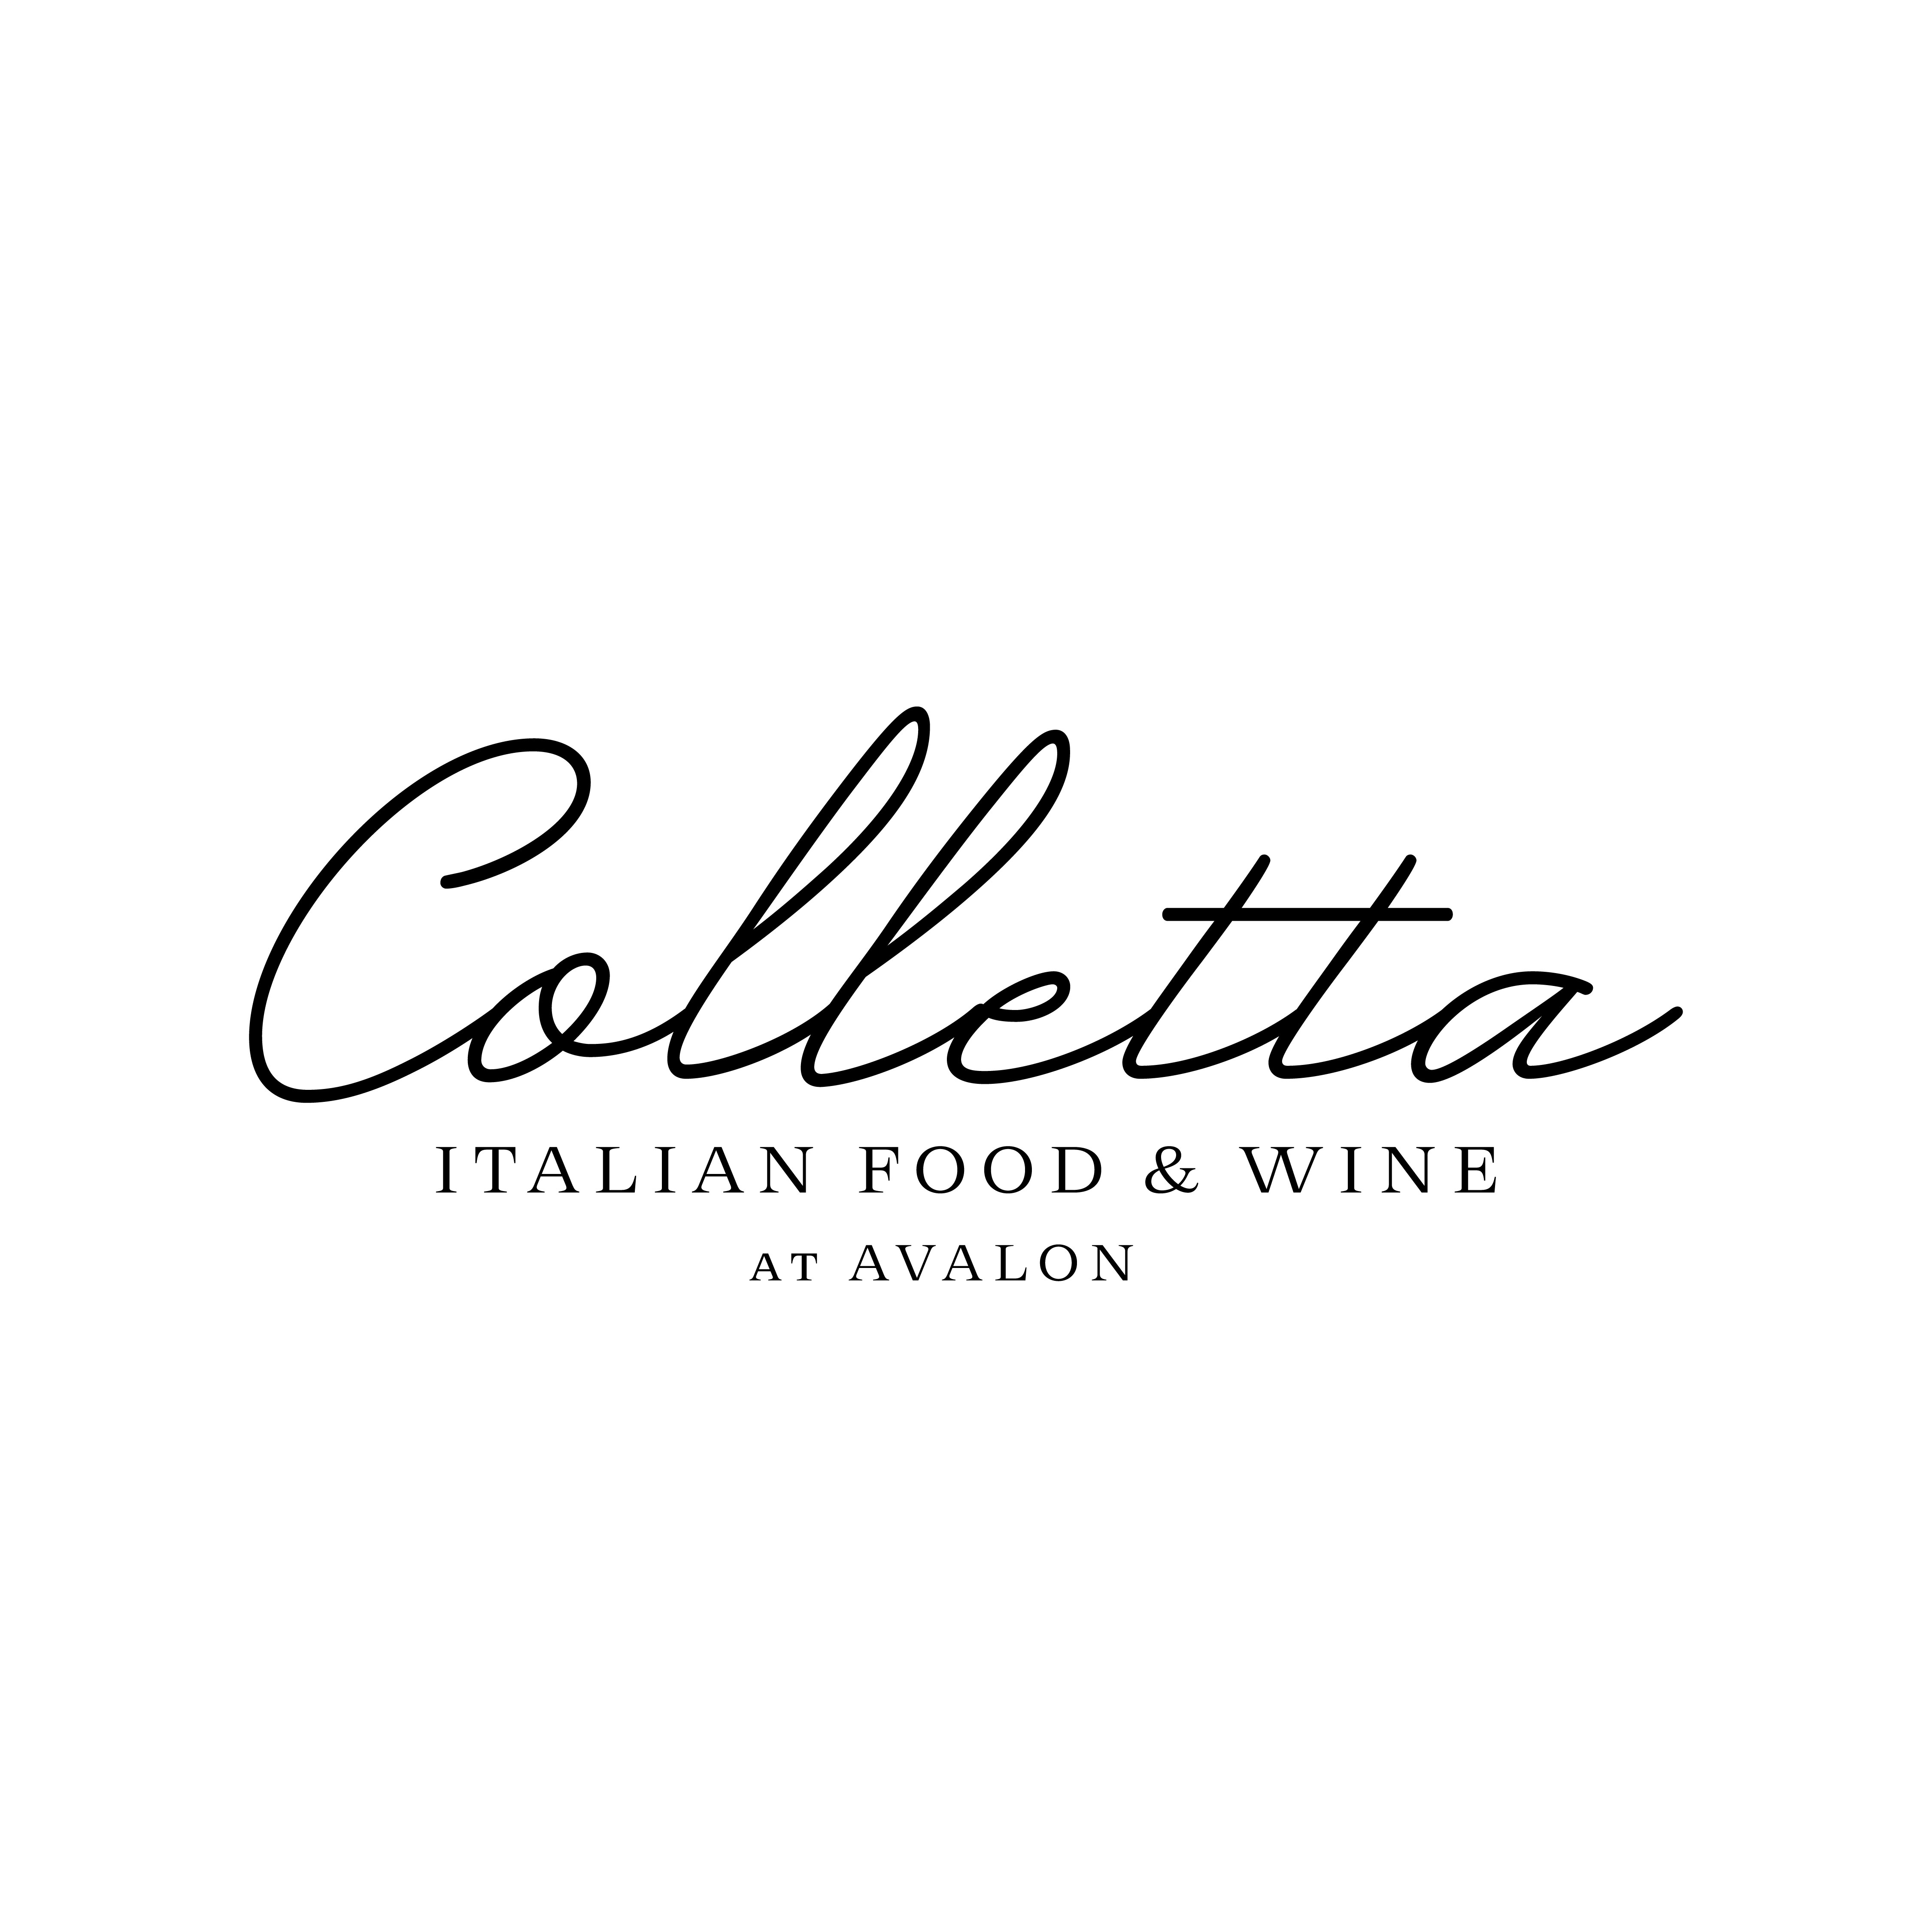 Colletta